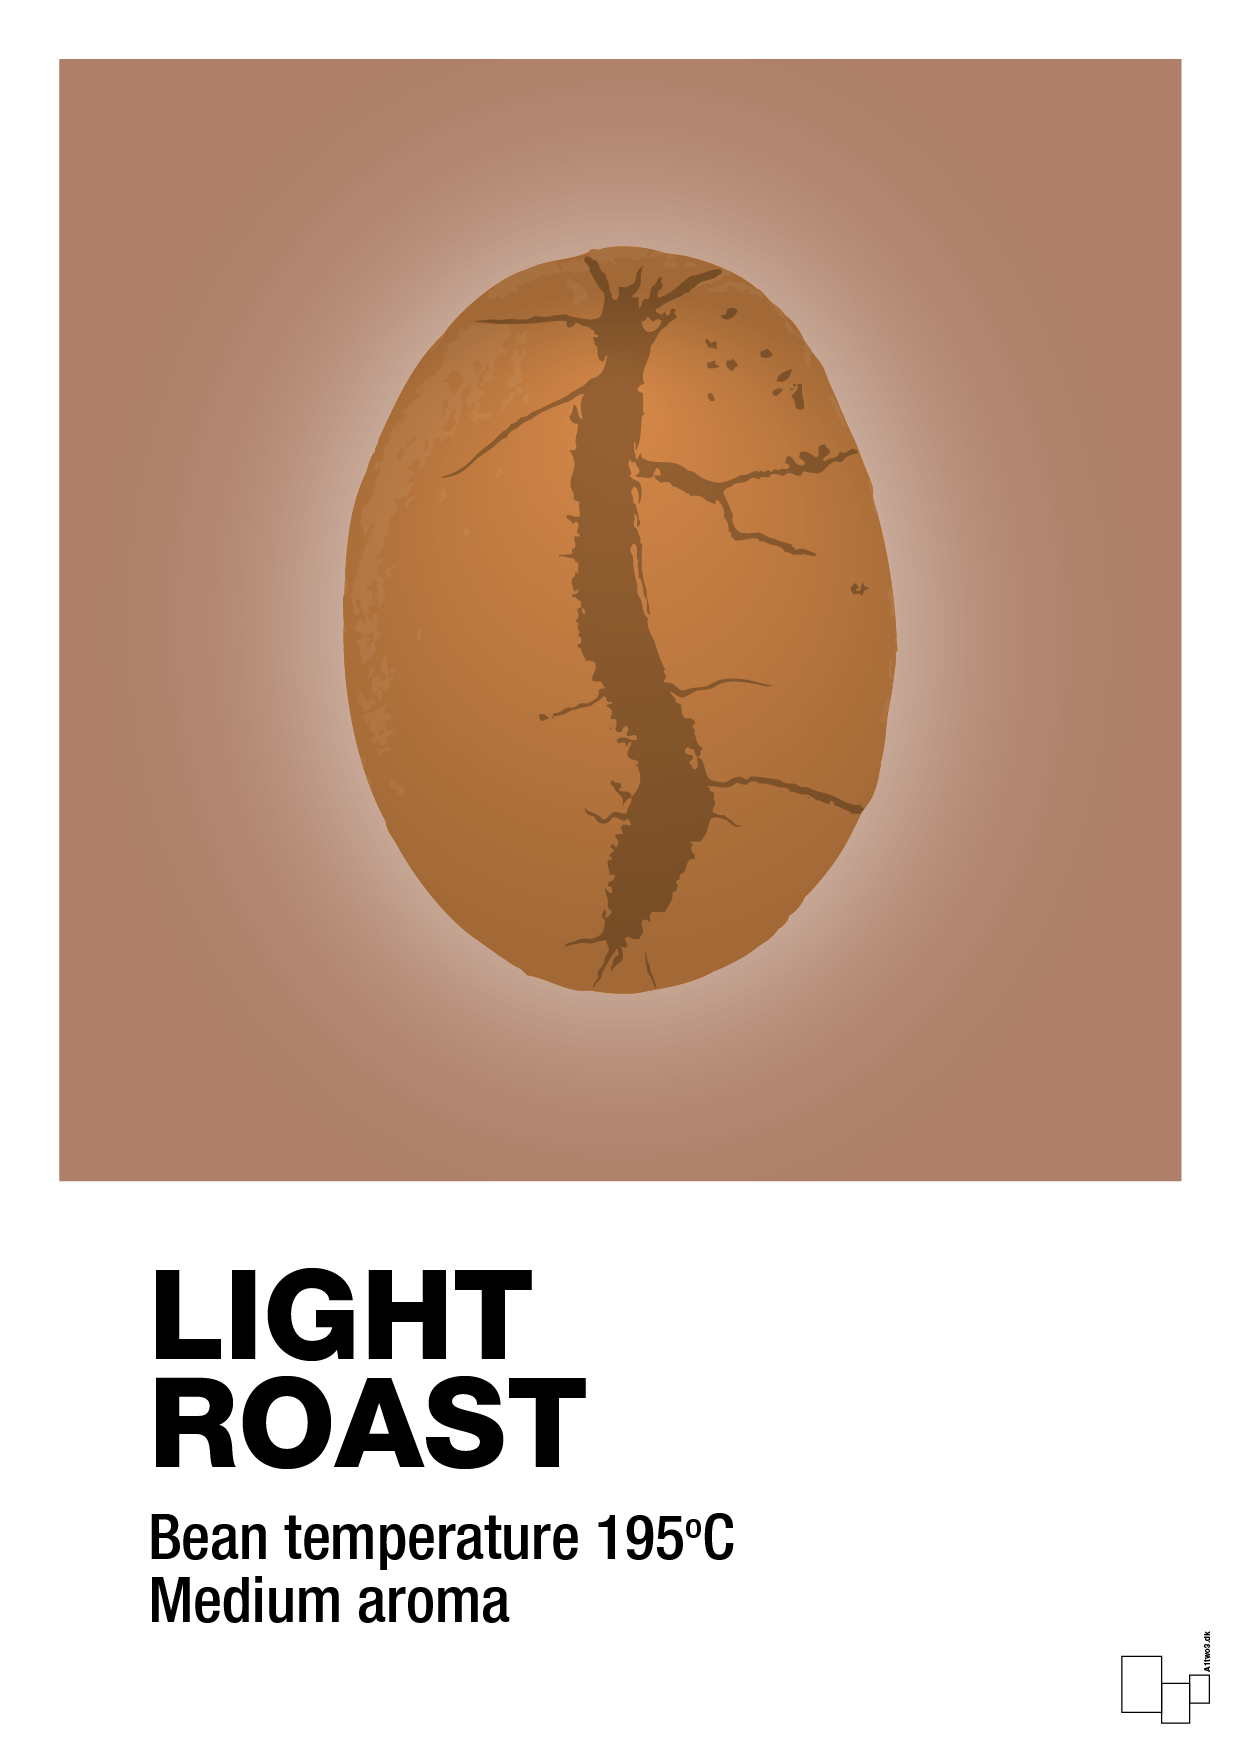 light roast - Plakat med Mad & Drikke i Cider Spice